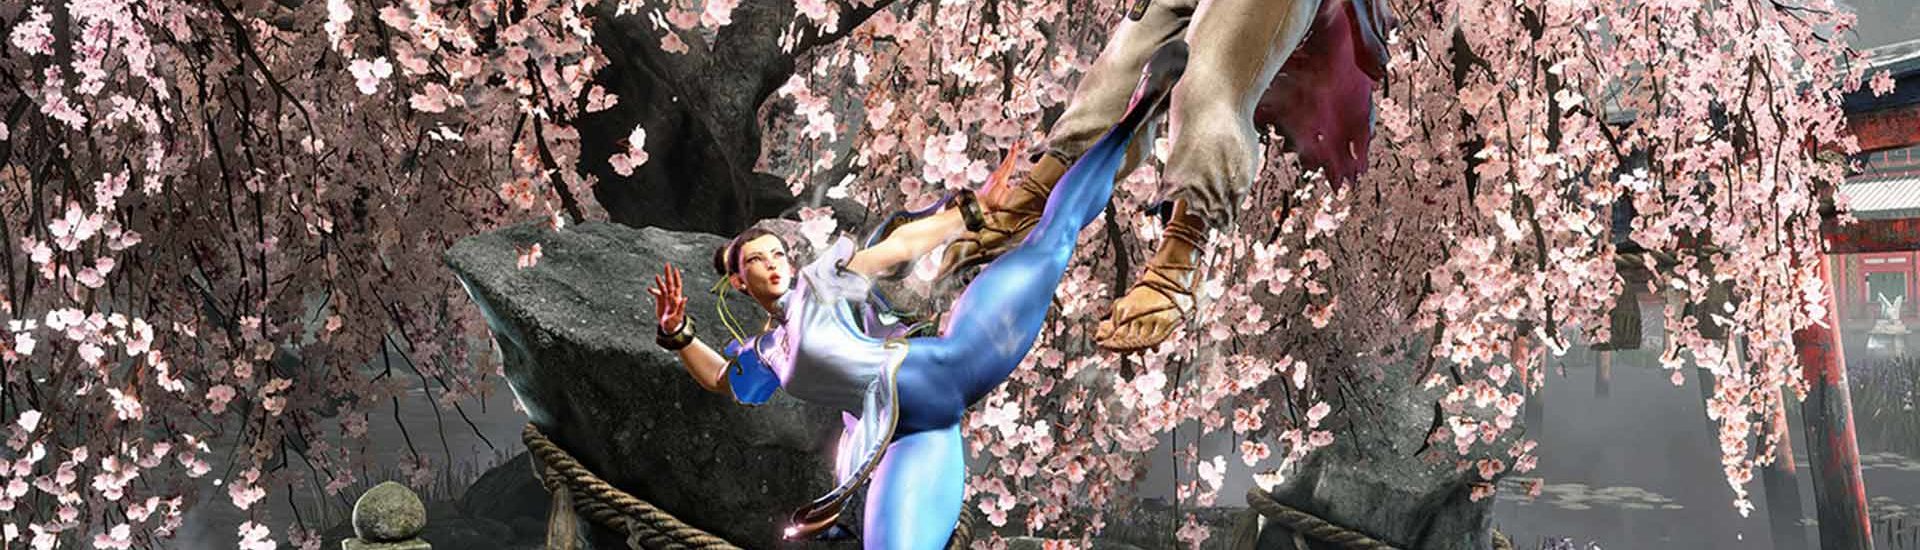 Street Fighter 6: Trailer zeigt Charaktere und mehr